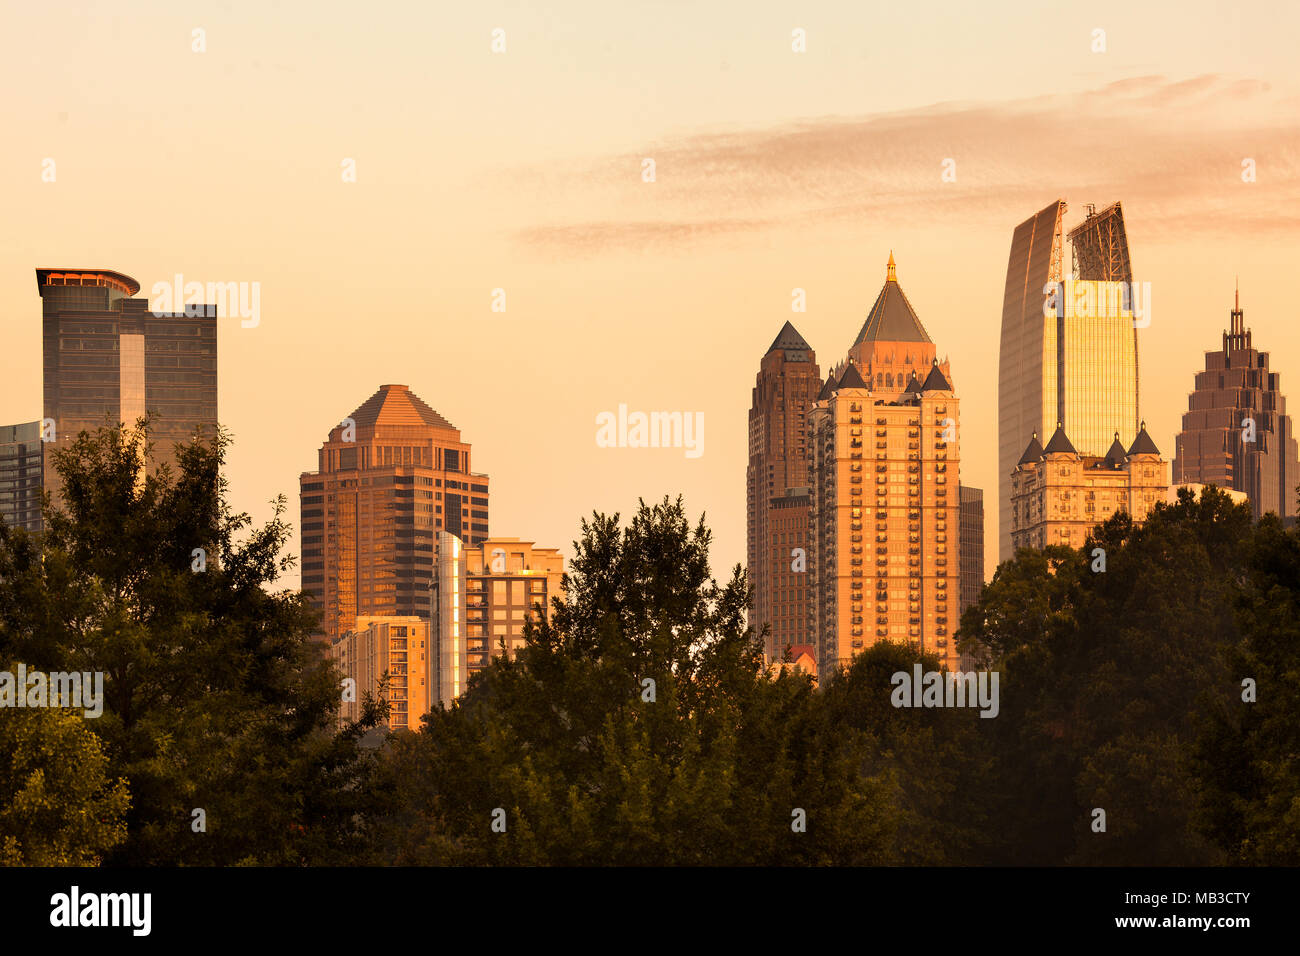 Midtown skyline from Piedmont Park, Atlanta, Georgia, USA Stock Photo